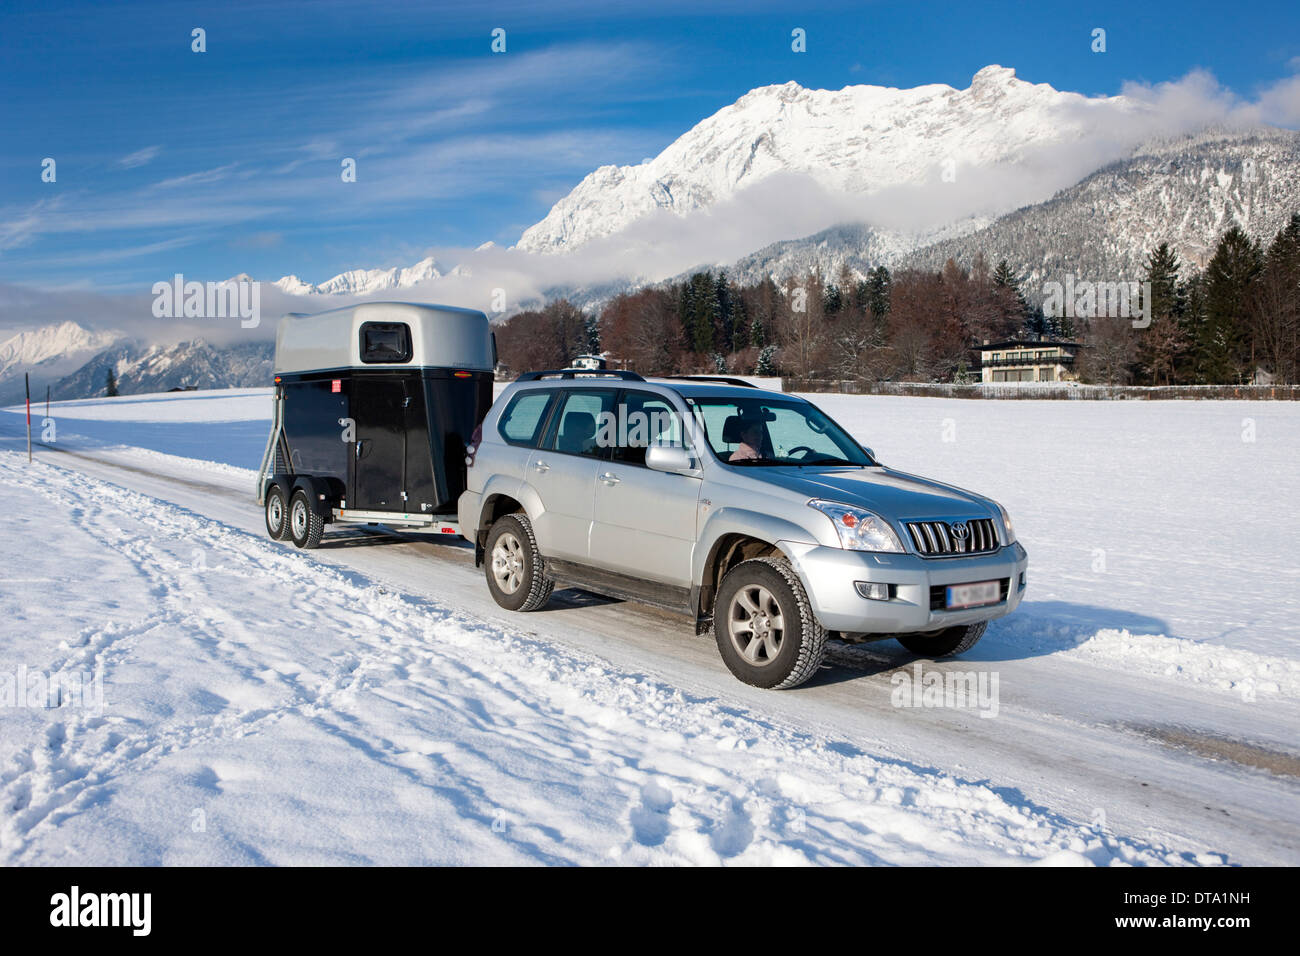 Quatre roues motrices véhicule tractant une remorque pour cheval sur une route couverte de neige dans les montagnes du Nord, Gnadenwald, Tyrol, Autriche Banque D'Images